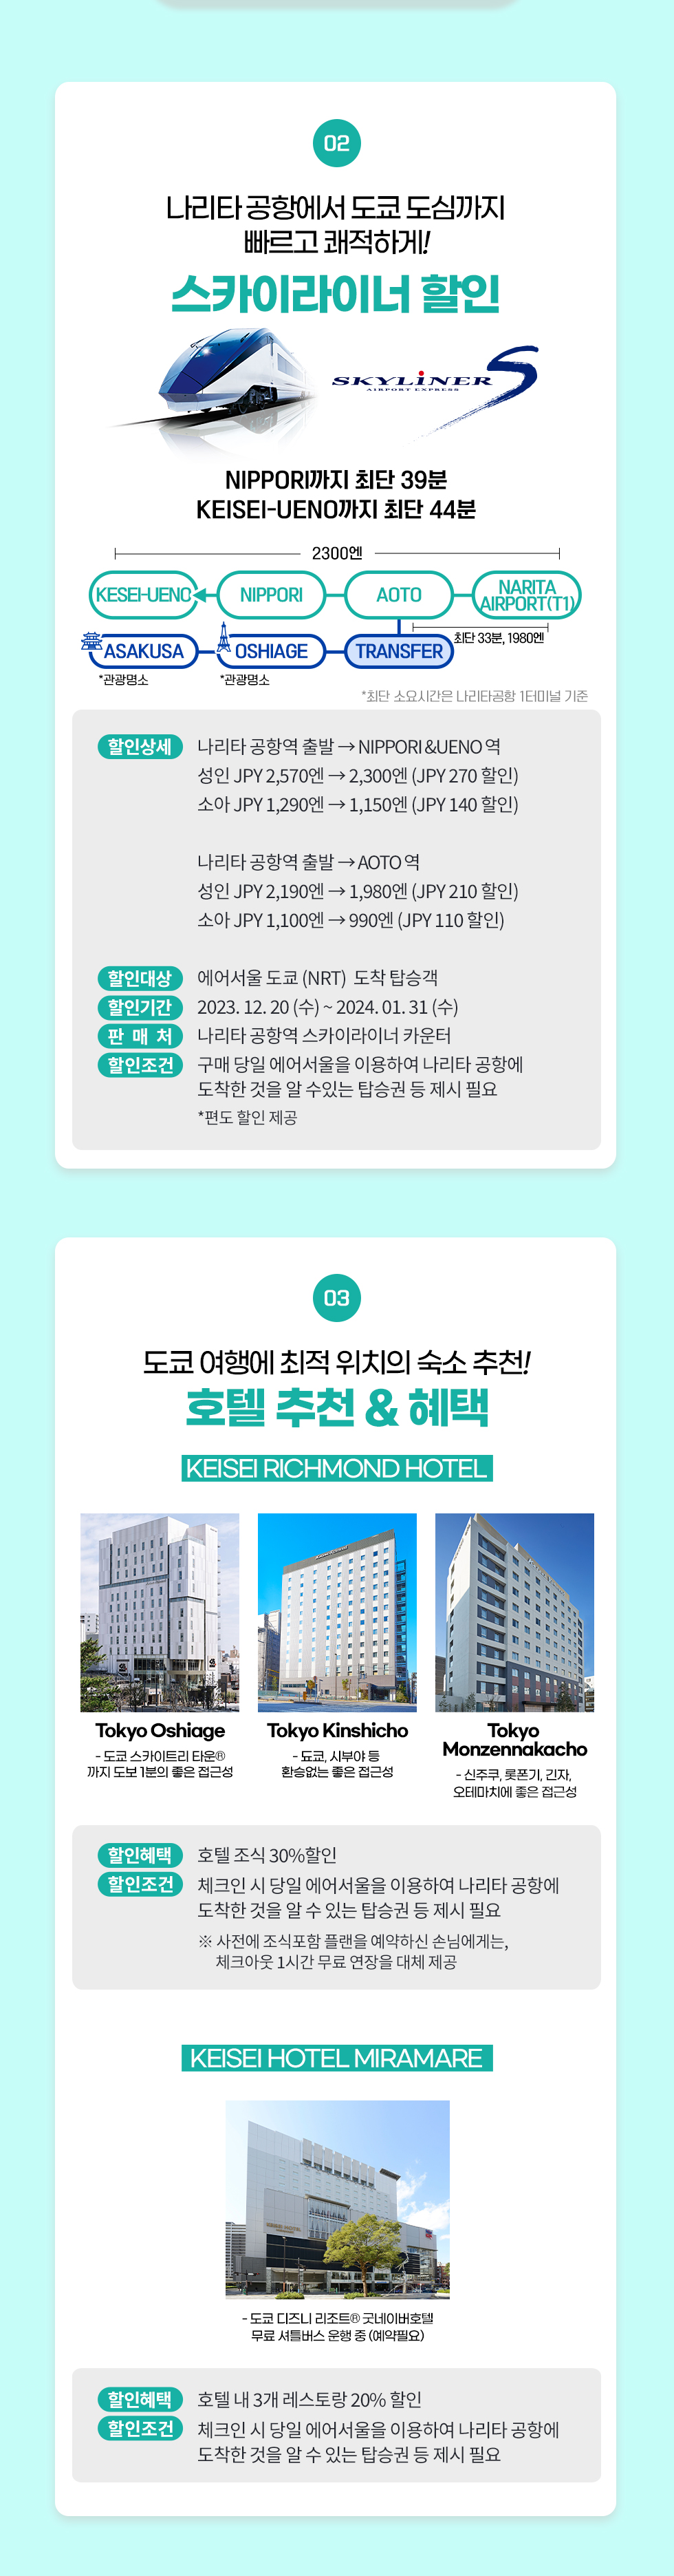 img02.jpg : 에어서울 인천~도쿄 할인항공권 및 스카이라이너 할인혜택